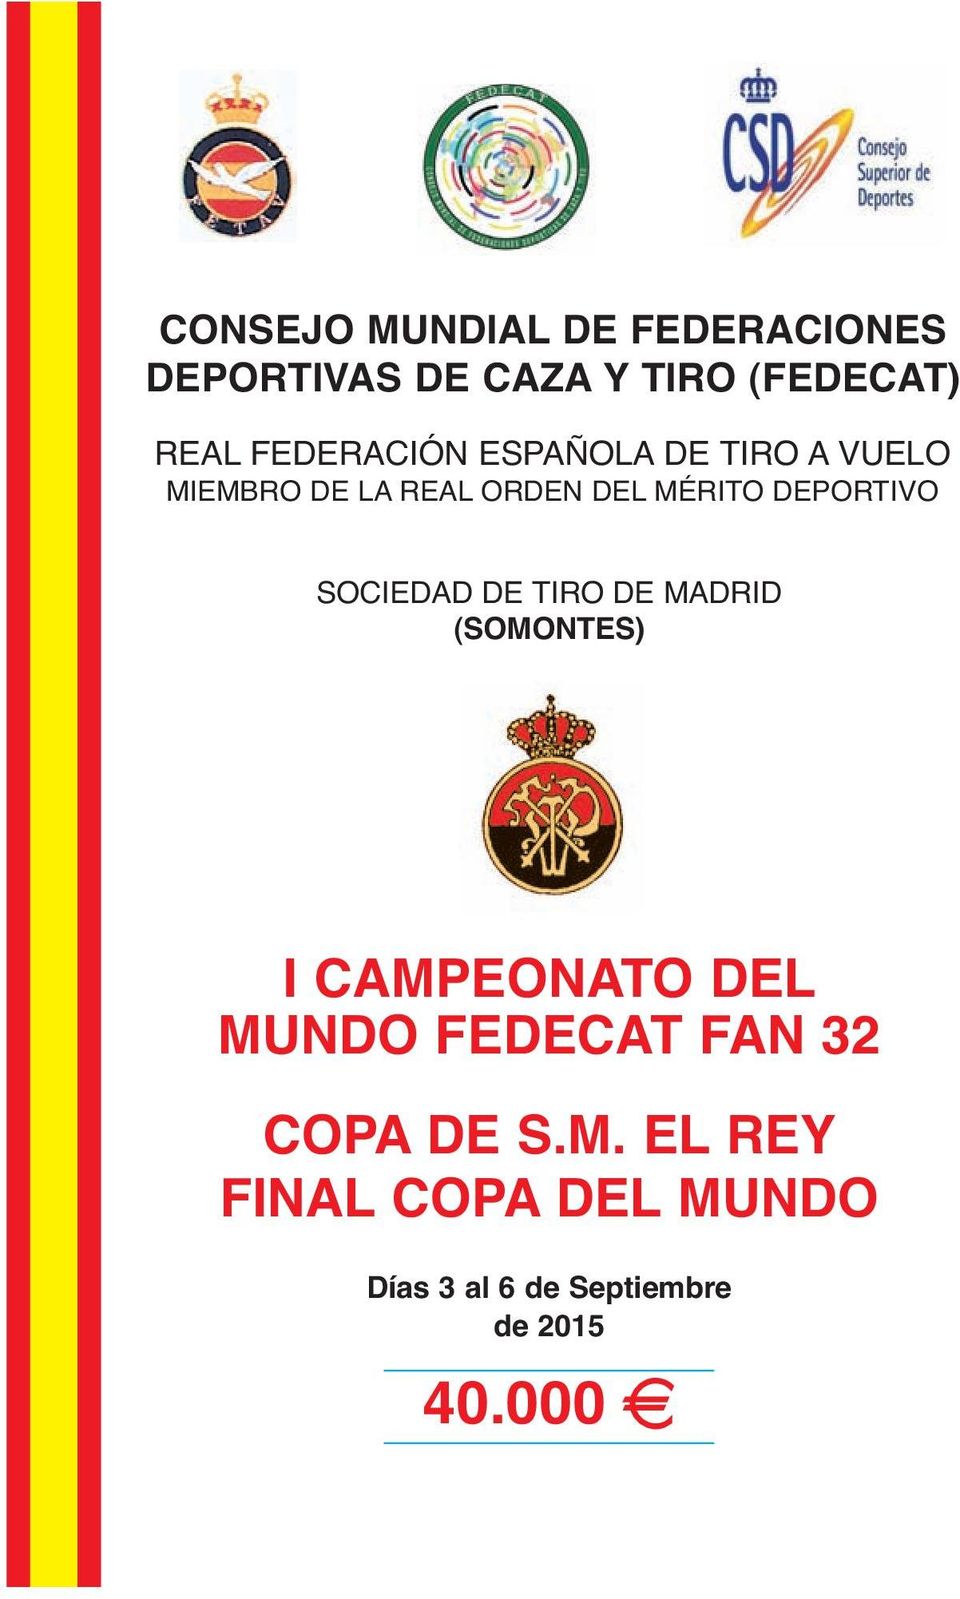 SOCIEDAD DE TIRO DE MADRID (SOMONTES) I CAMPEONATO DEL MUNDO FEDECAT FAN 32 COPA